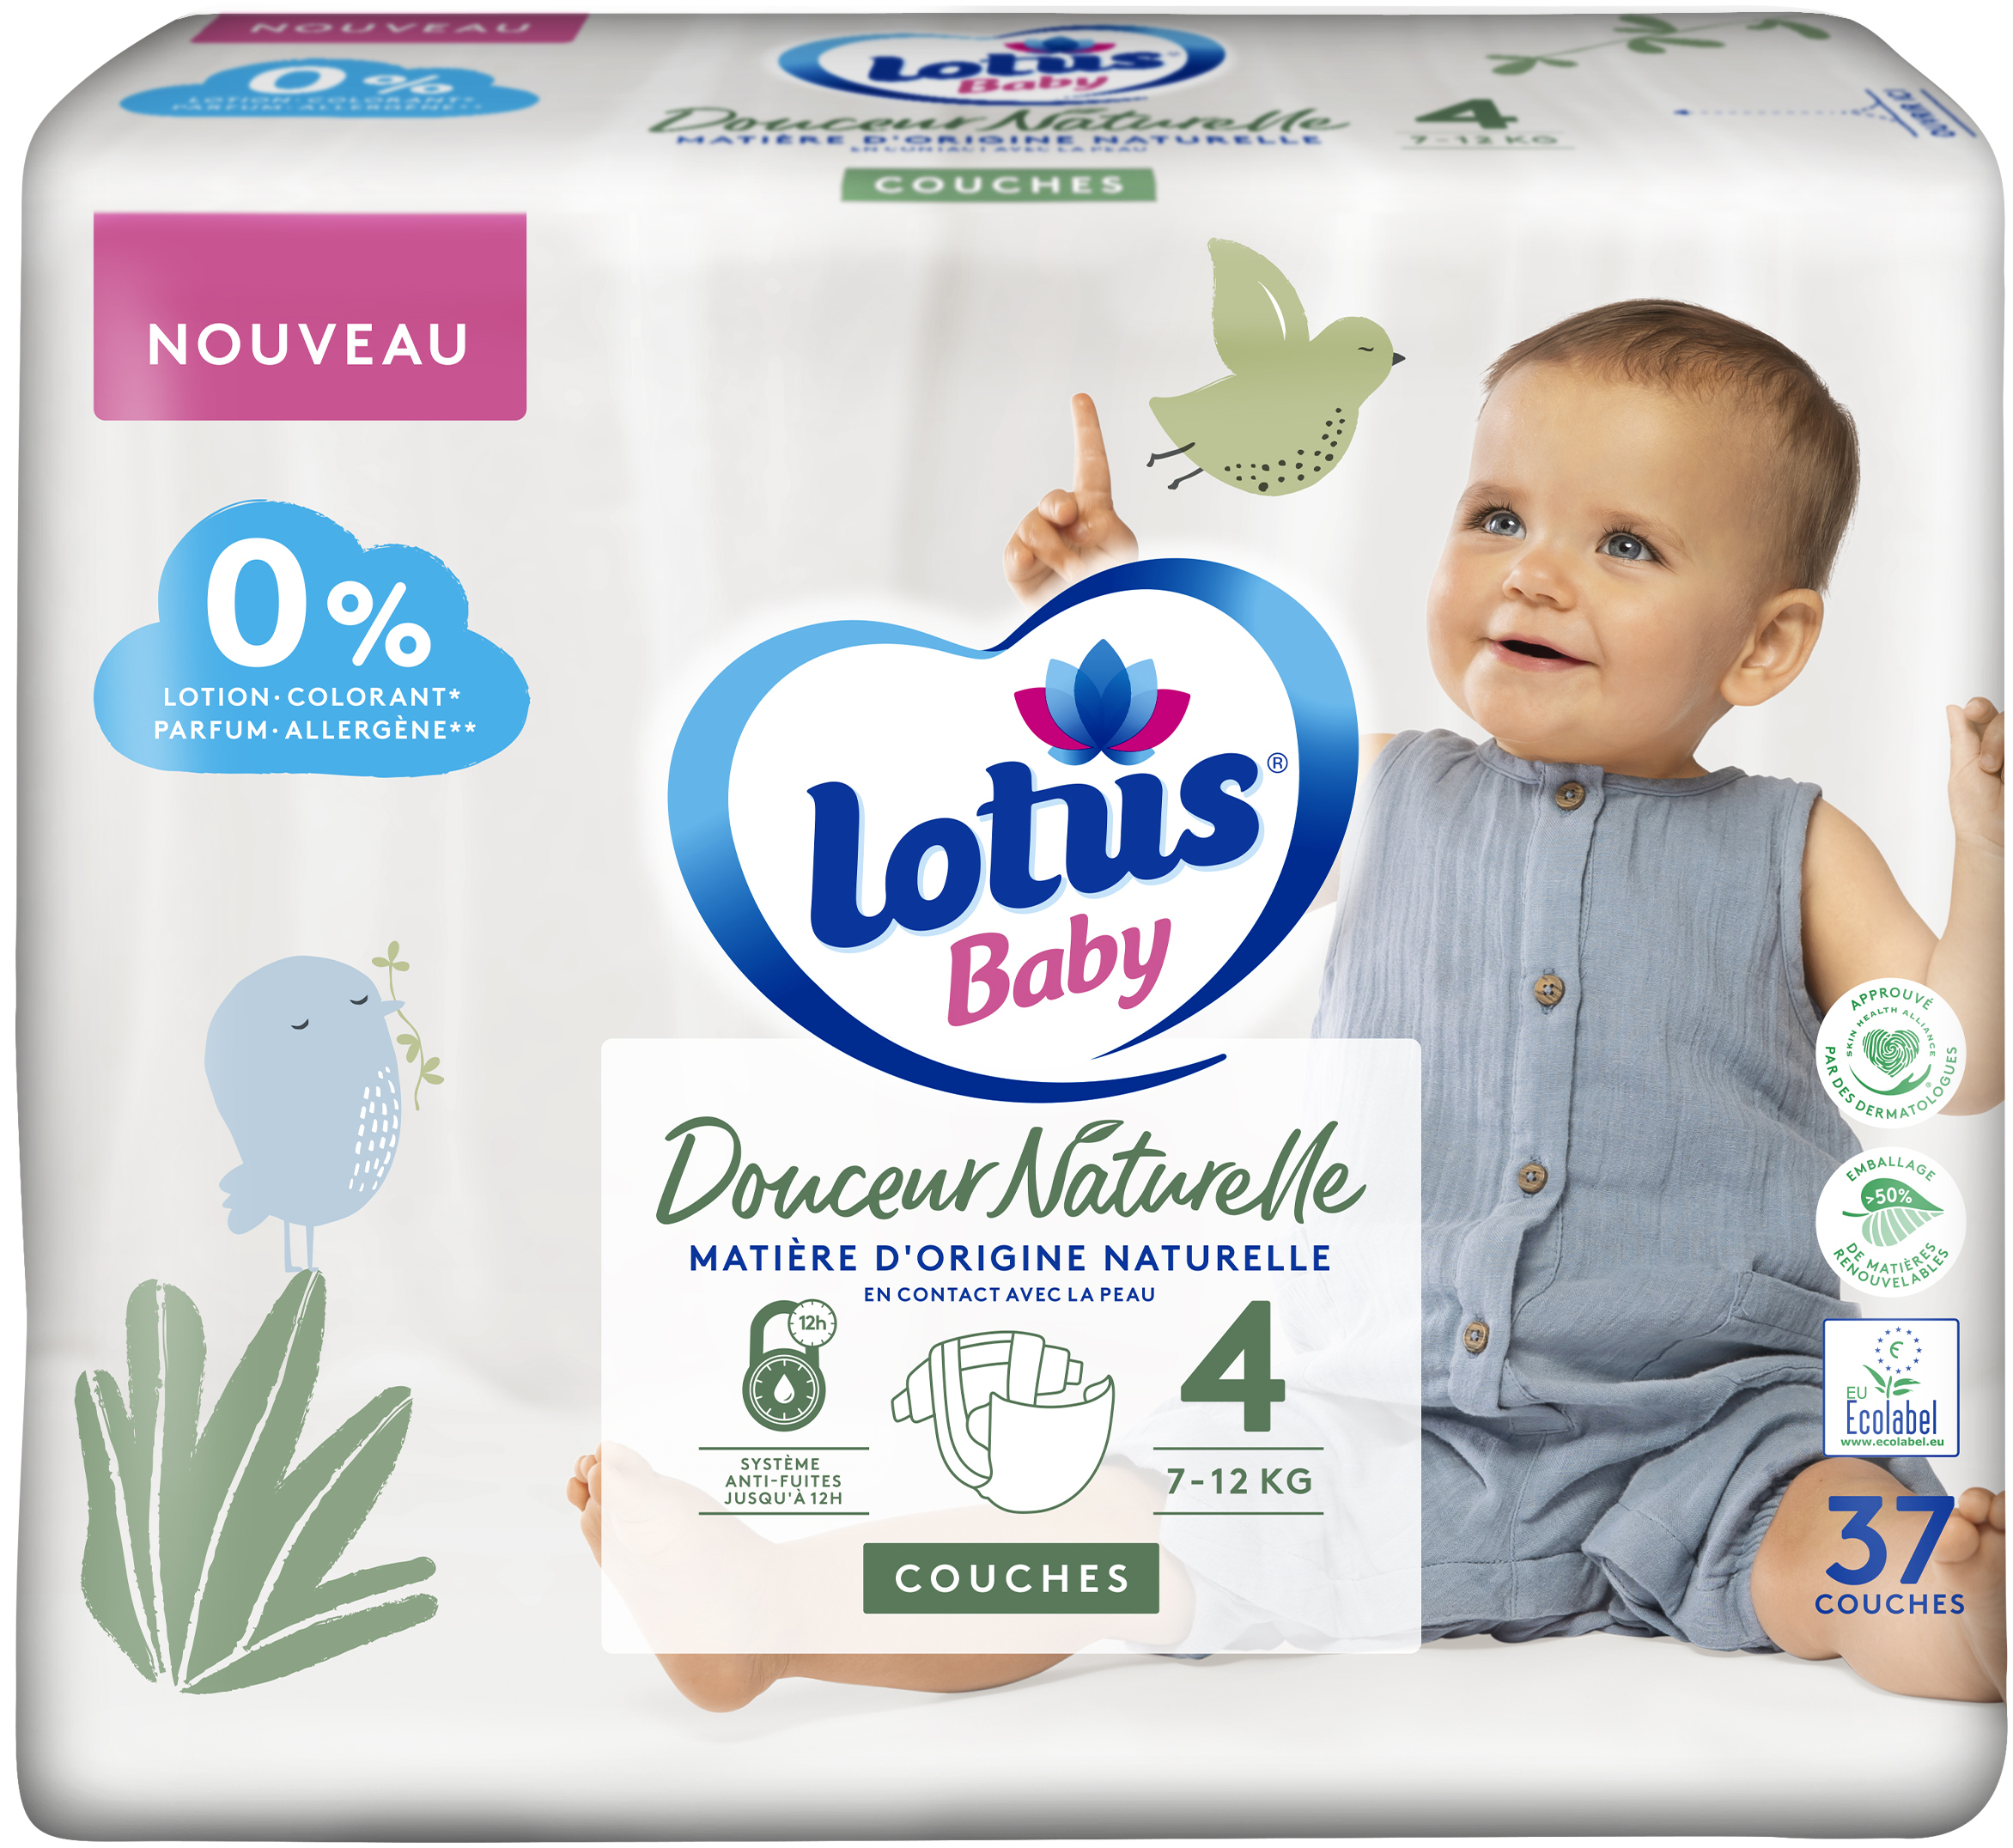 Promo Lotus baby couches bébé douceur naturelle chez Casino Hyperfrais